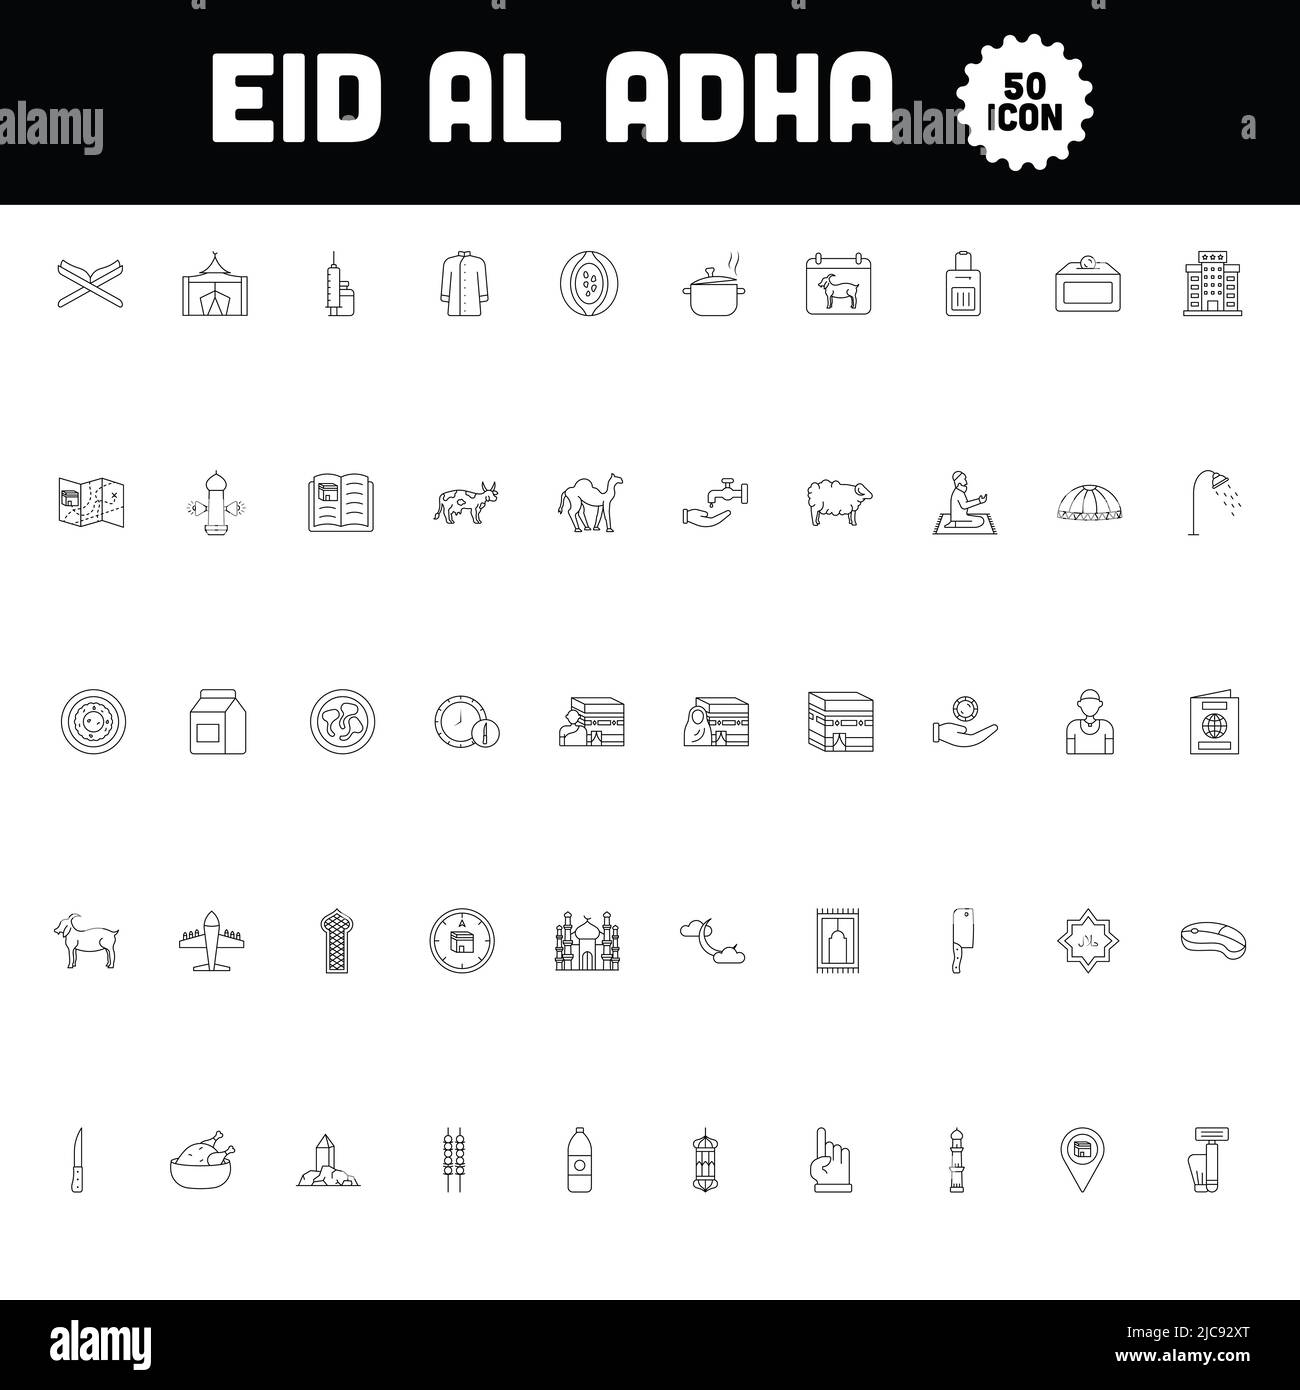 Illustration de 50 icône Eid Al Adha définie dans Line Art Illustration de Vecteur